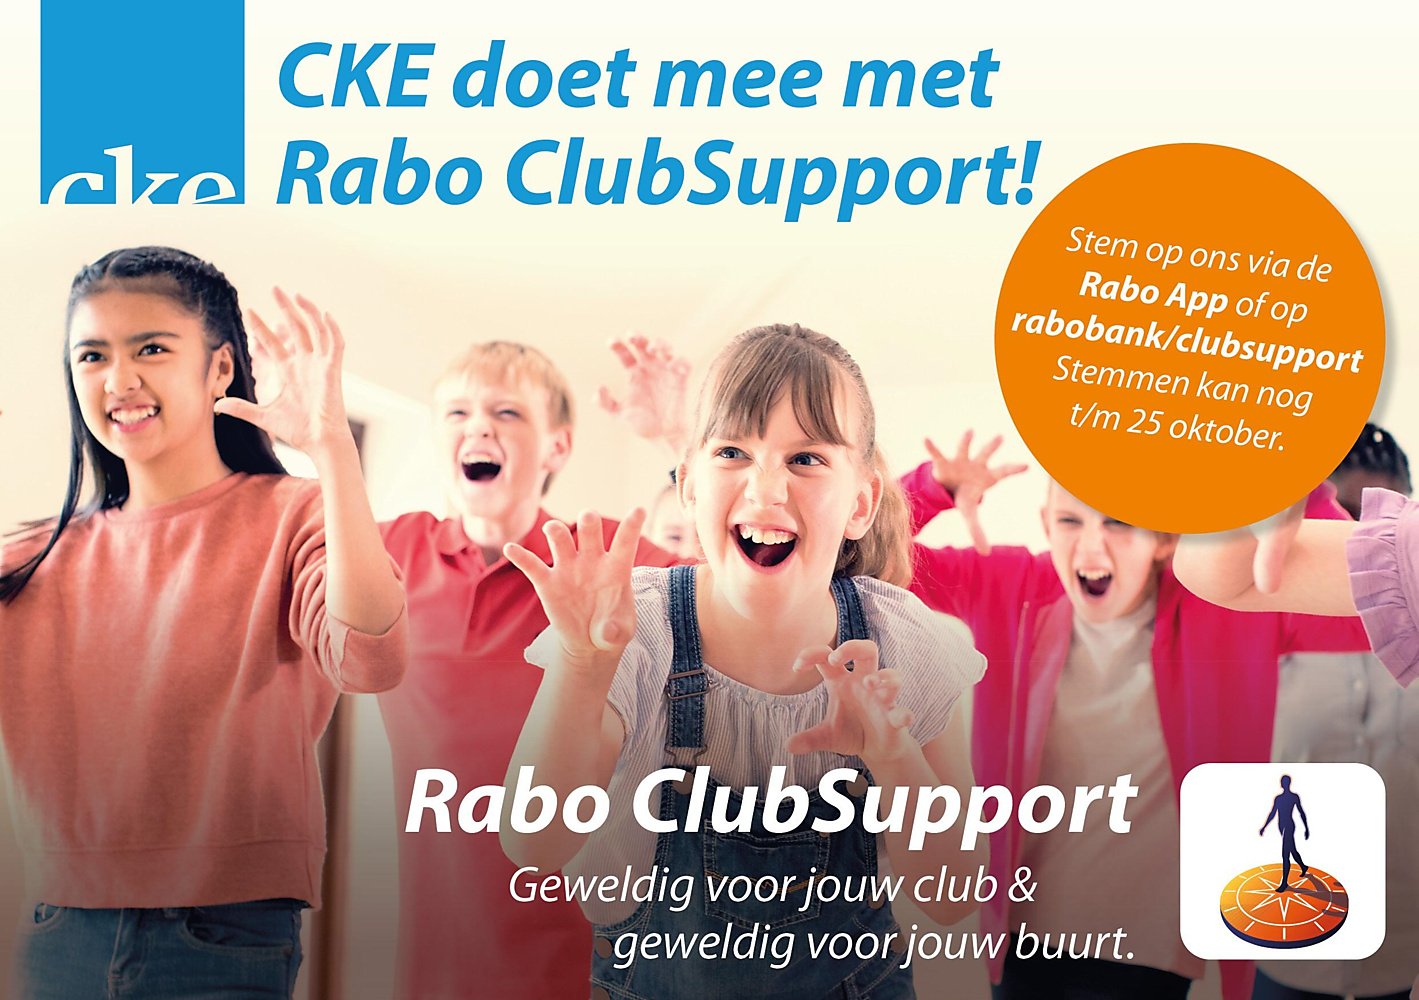 CKE doet mee met Rabo ClubSupport!